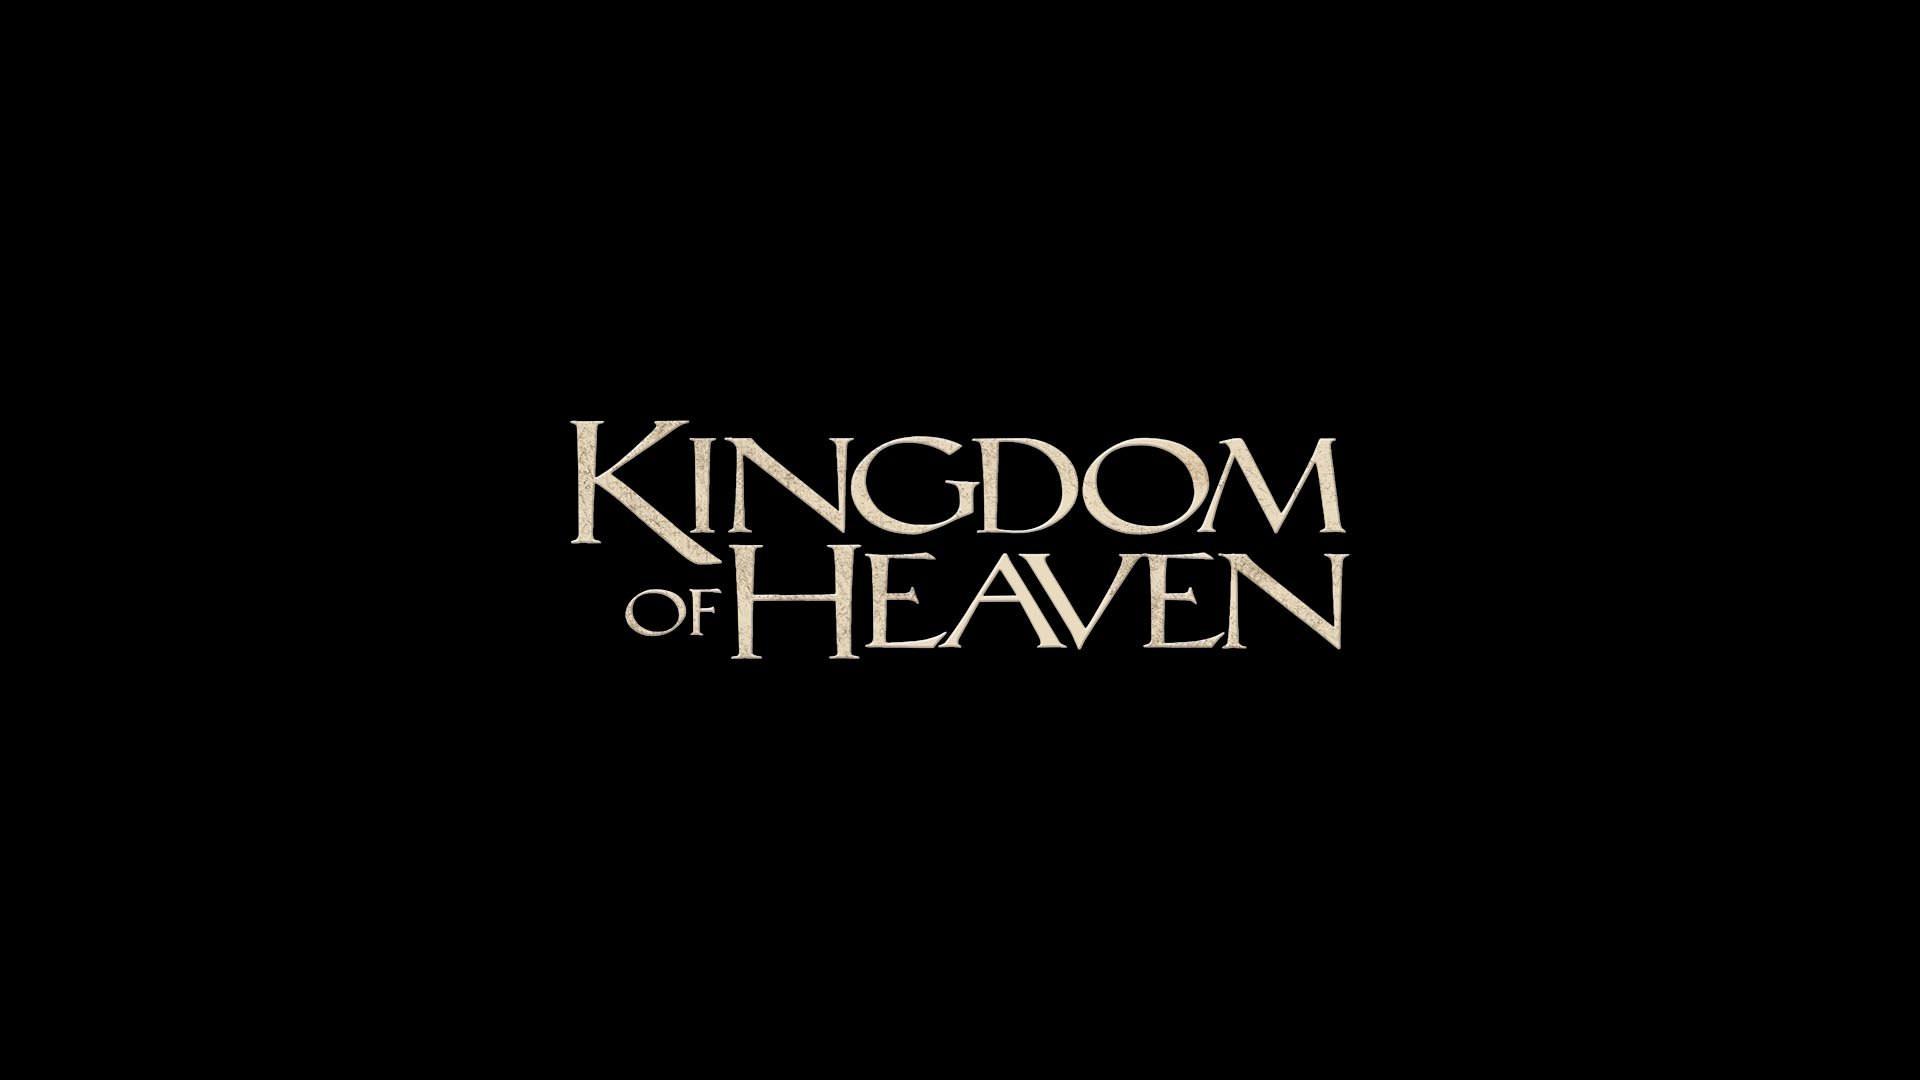 Kingdom Of Heaven wallpaper HD for desktop background